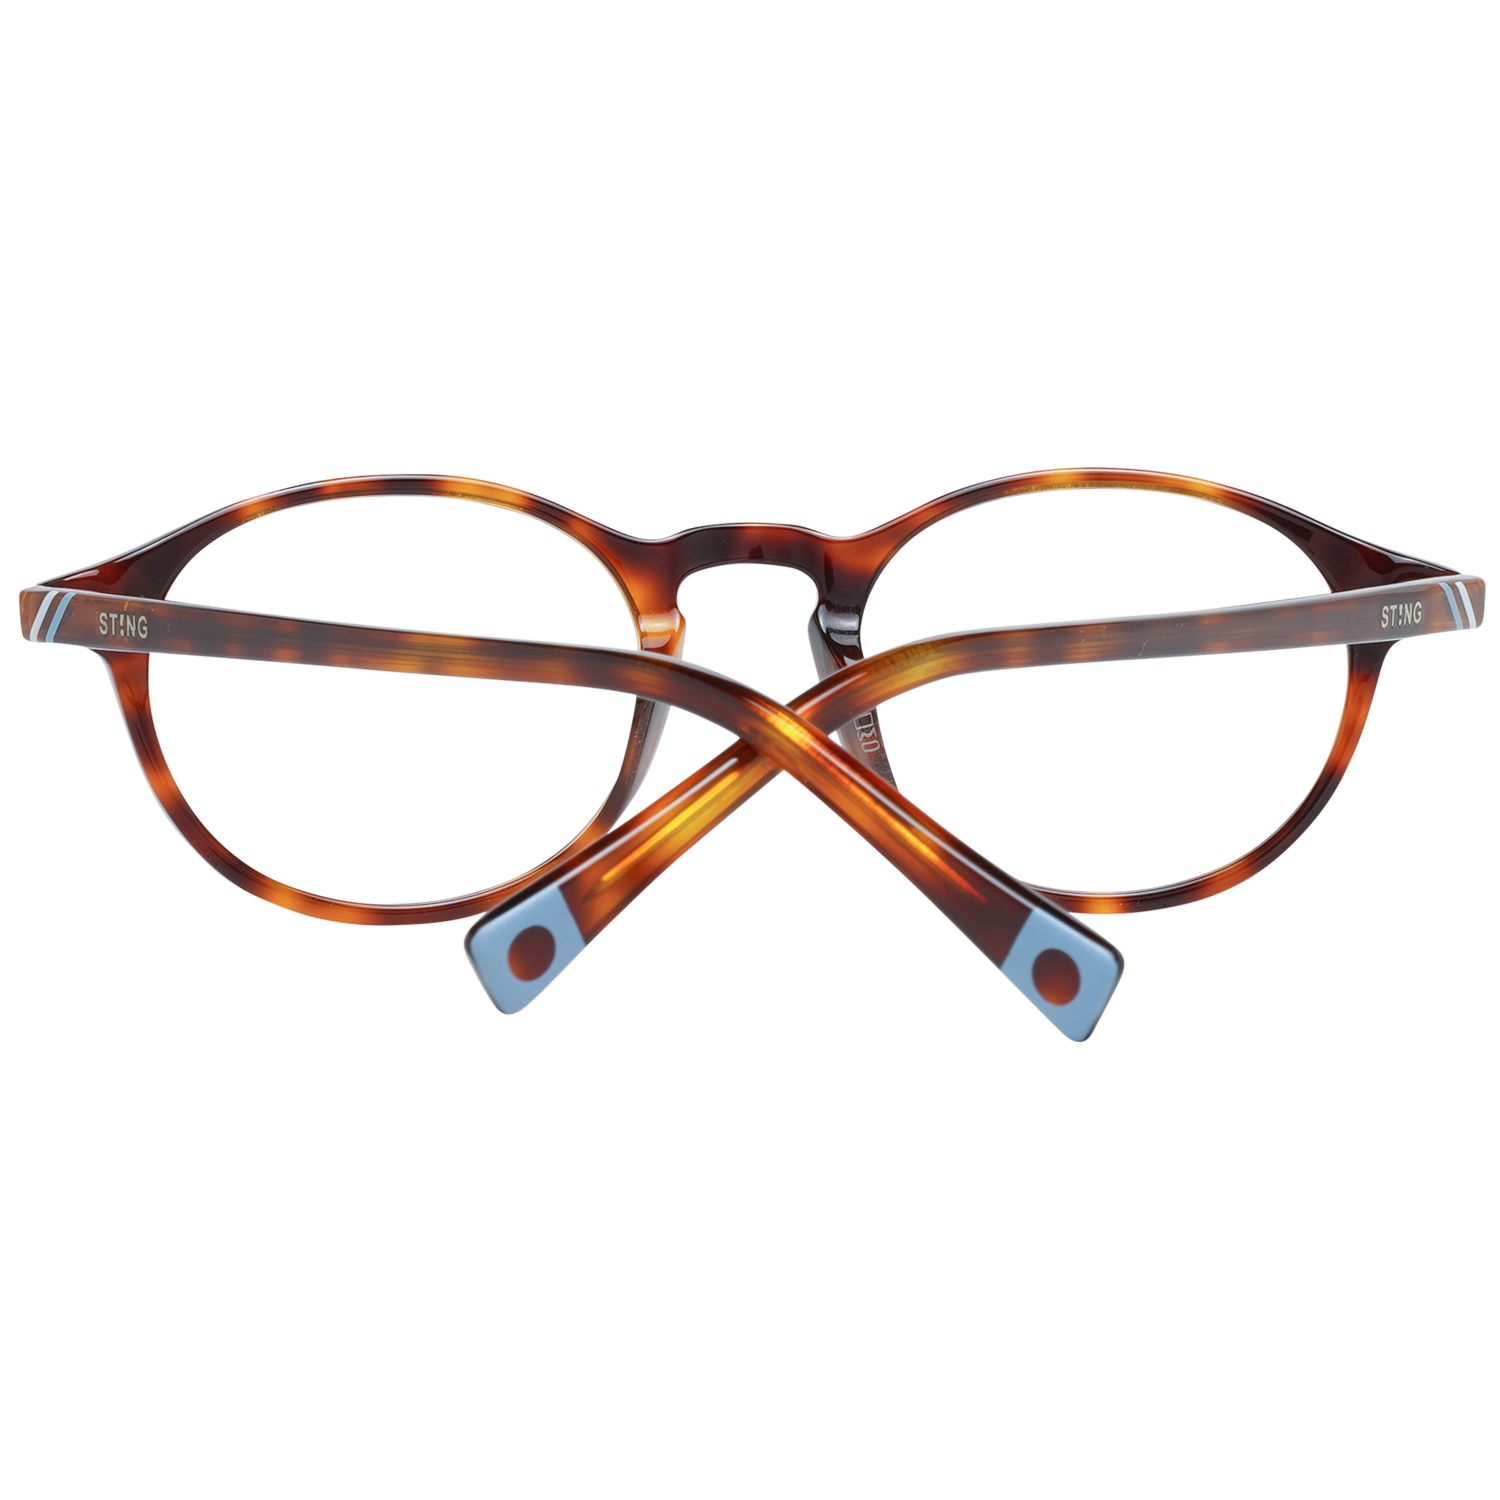 Sting Frames Sting Optical Frame VS6527V 09AT 47 Eyeglasses Eyewear UK USA Australia 